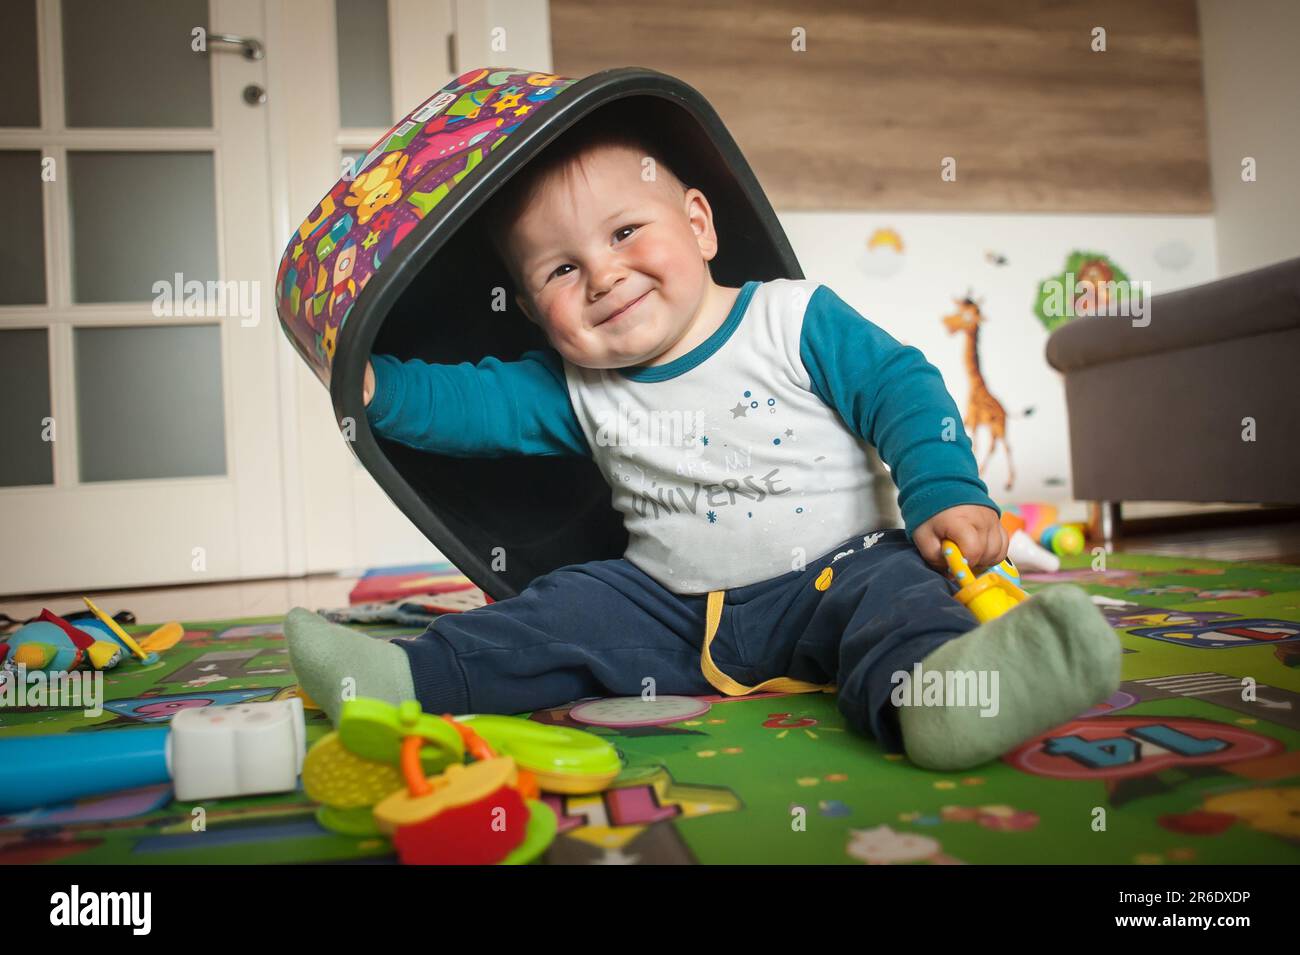 El bebé sonriente está sentado en el piso de casa, jugando con juguetes coloridos y llevando una caja de juguetes sobre su cabeza. Amor y emoción familiar Foto de stock